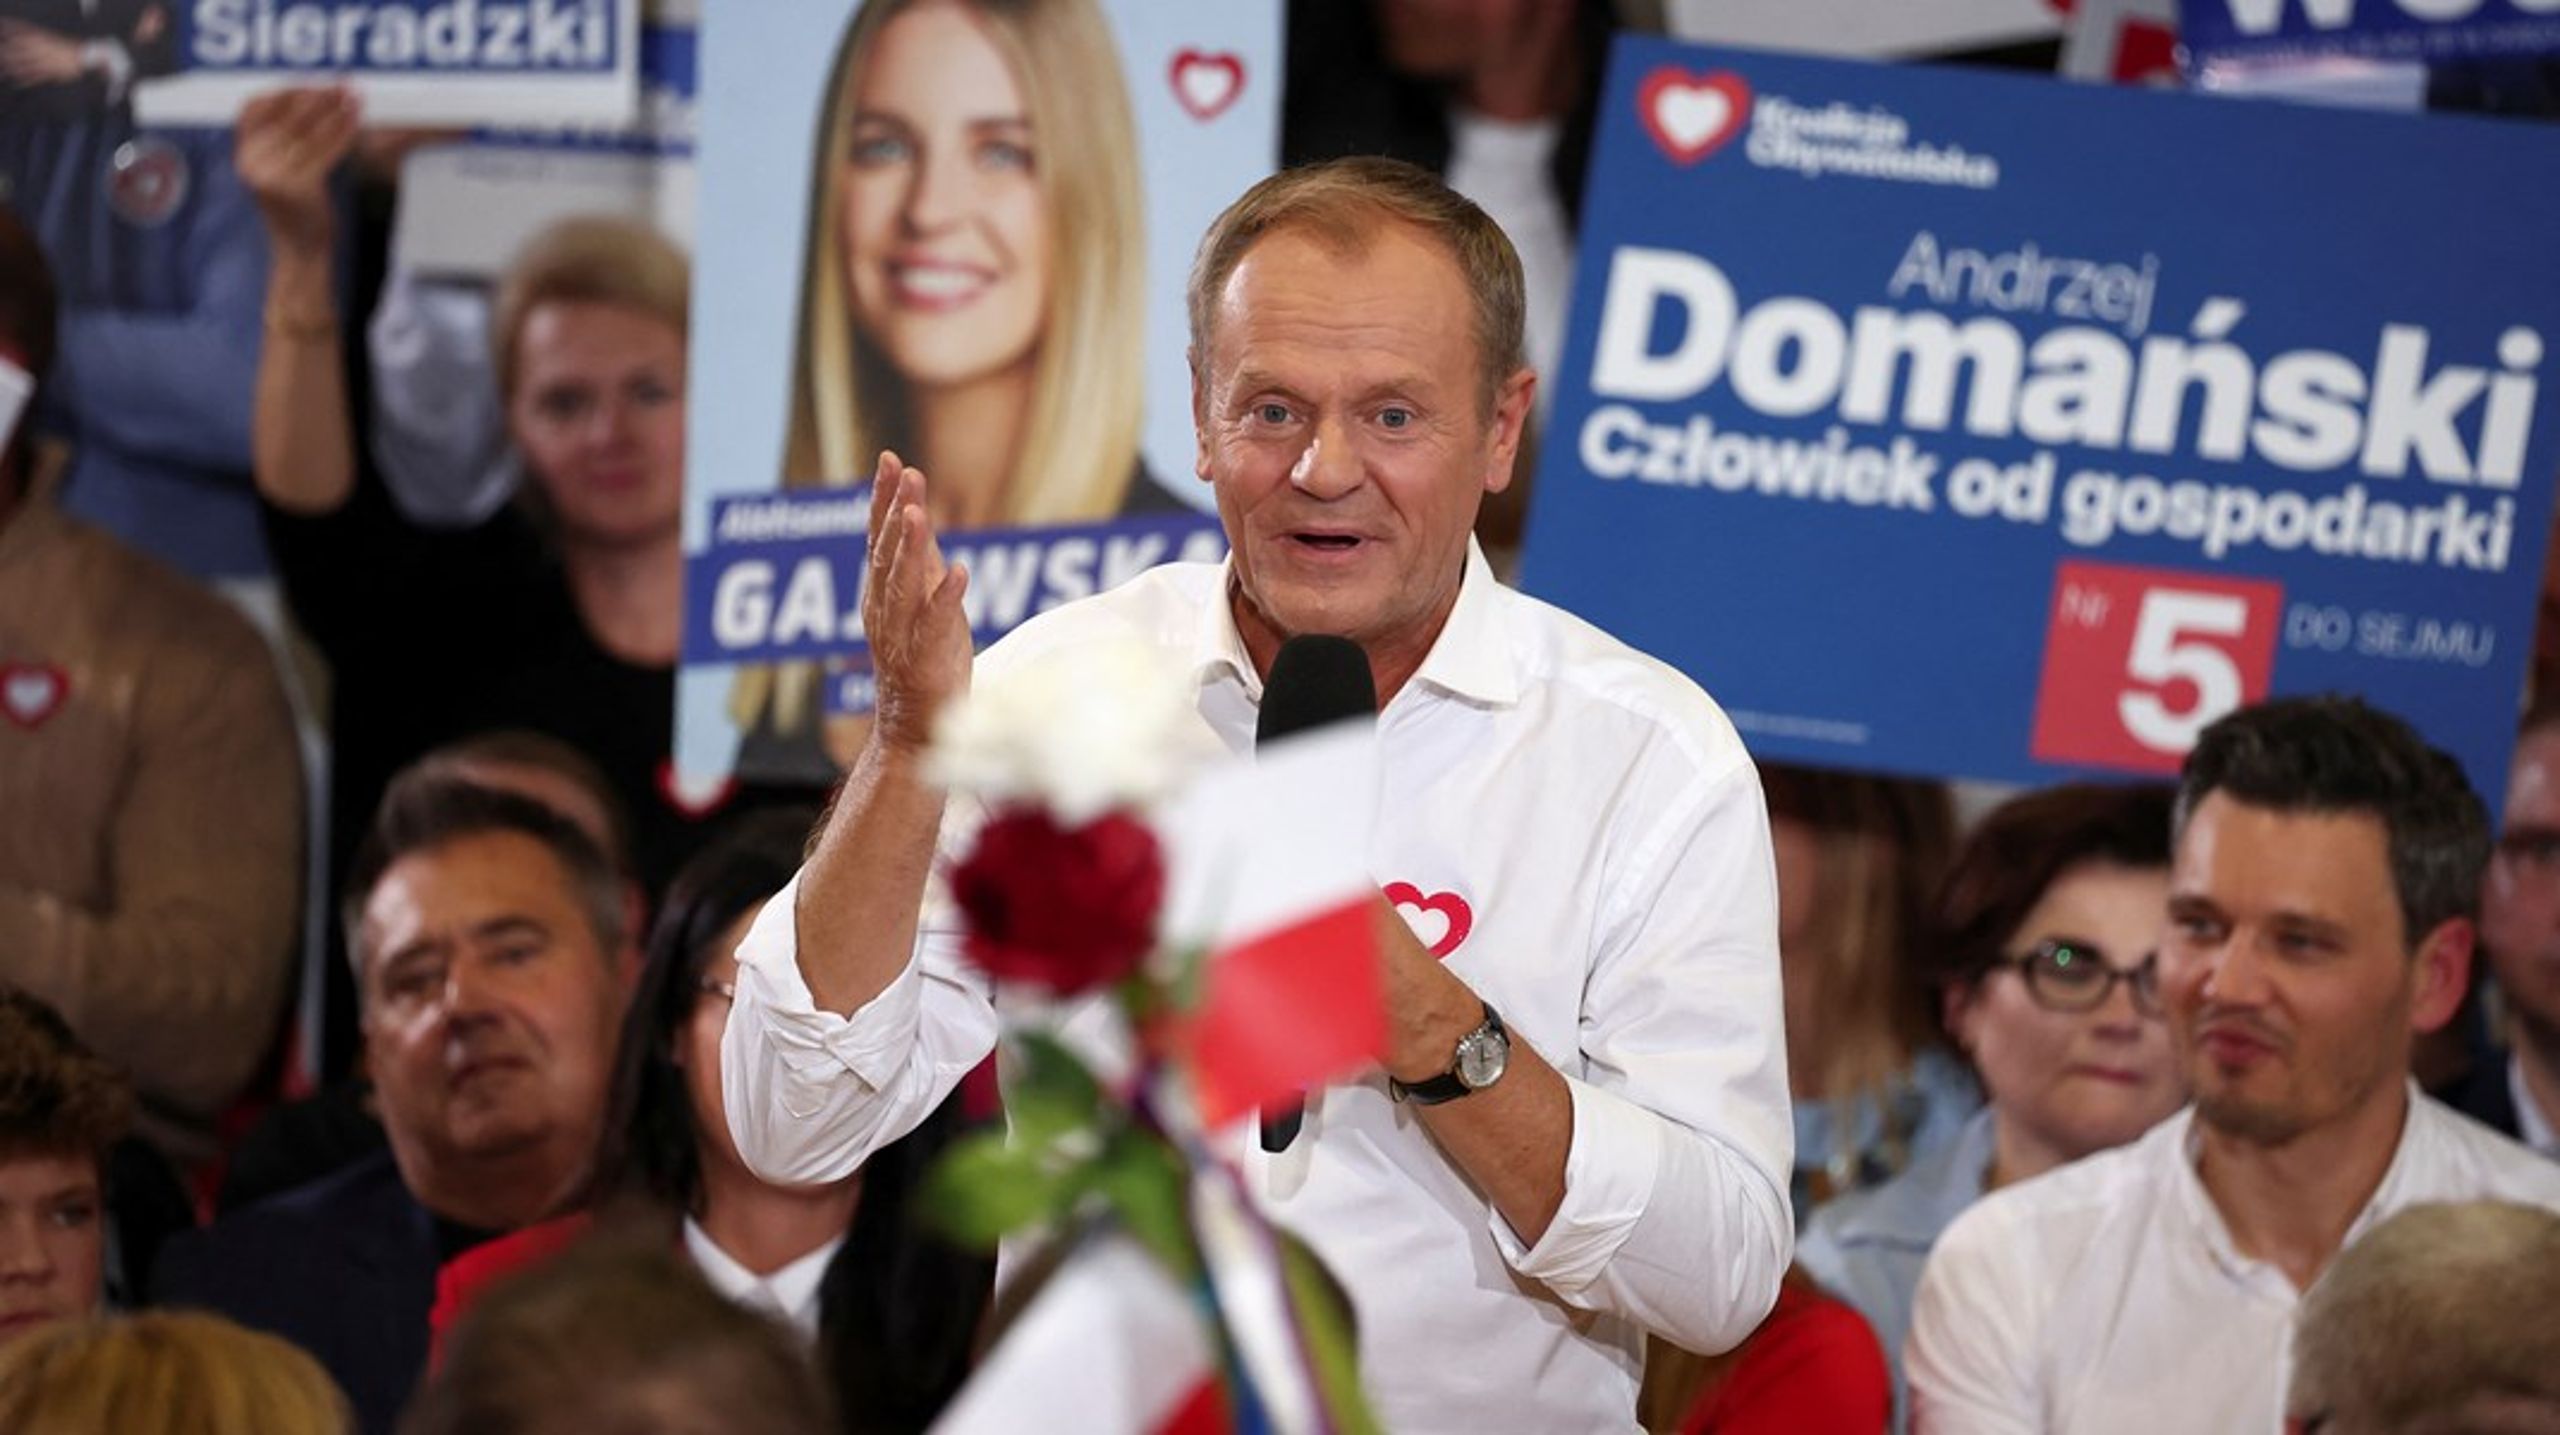 Donald Tusk, leder av det liberale partiet Borgerplattformen, ligger an til å bli ny statsminister i Polen.